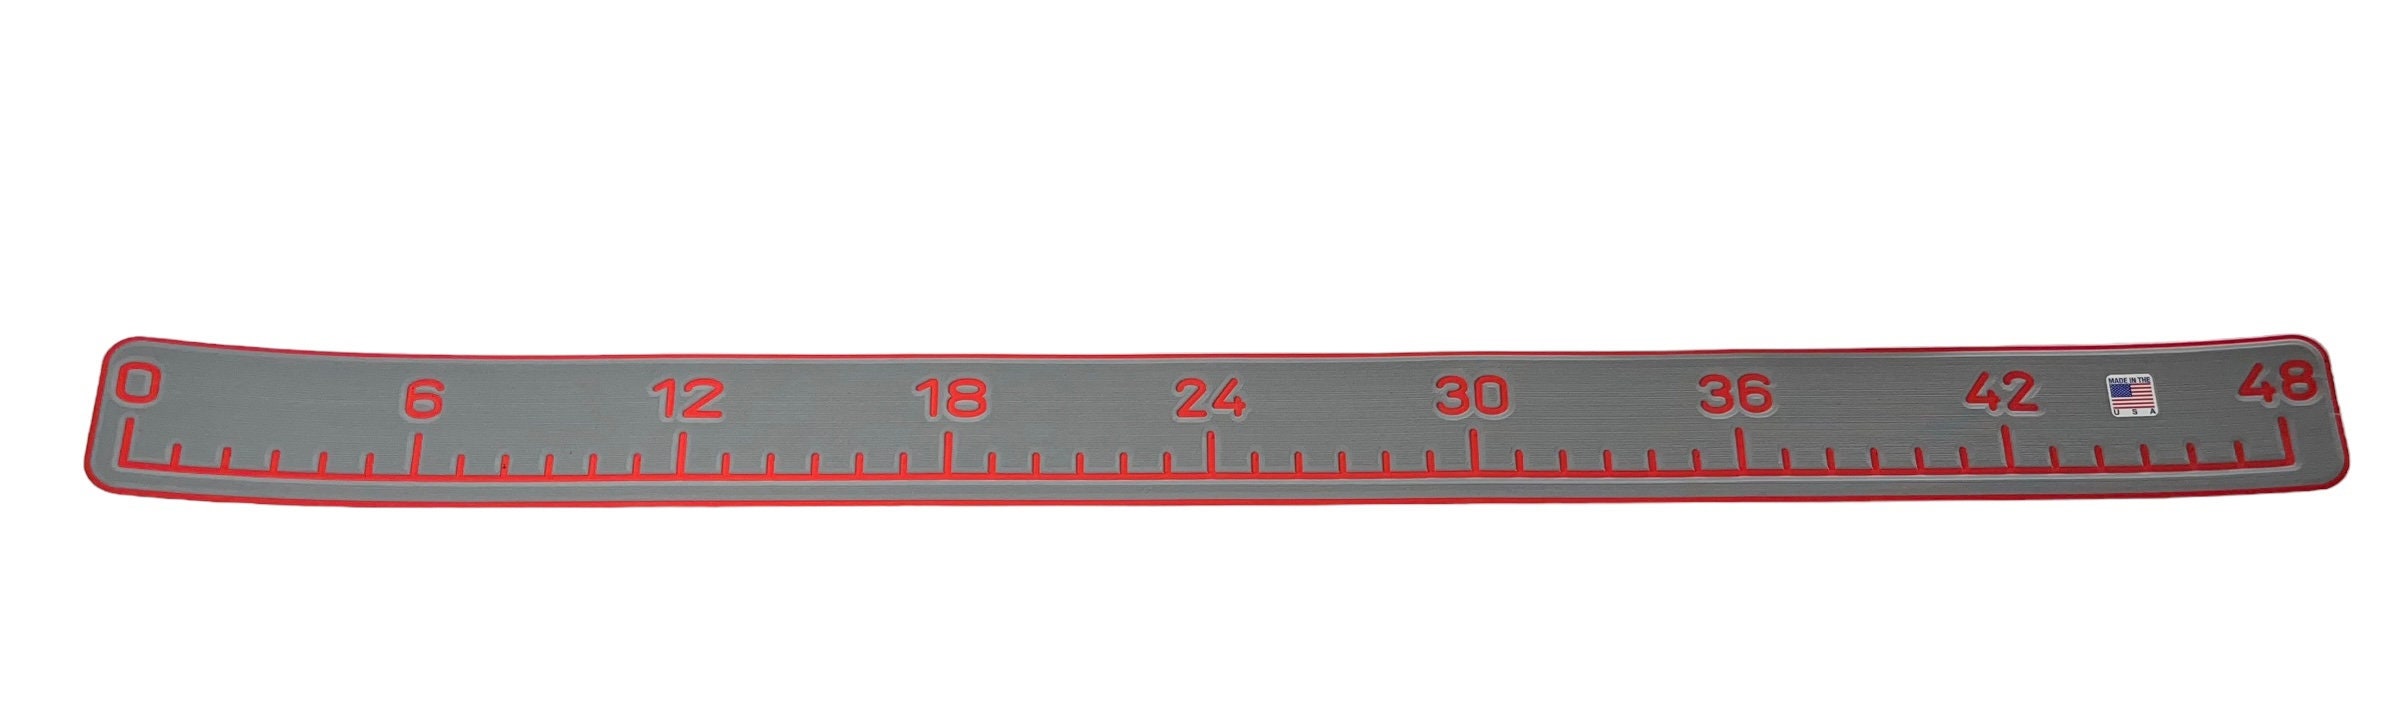 3 Pcs 42 Inch Boat Fish Ruler Segmented EVA Fishing Ruler Adhesive